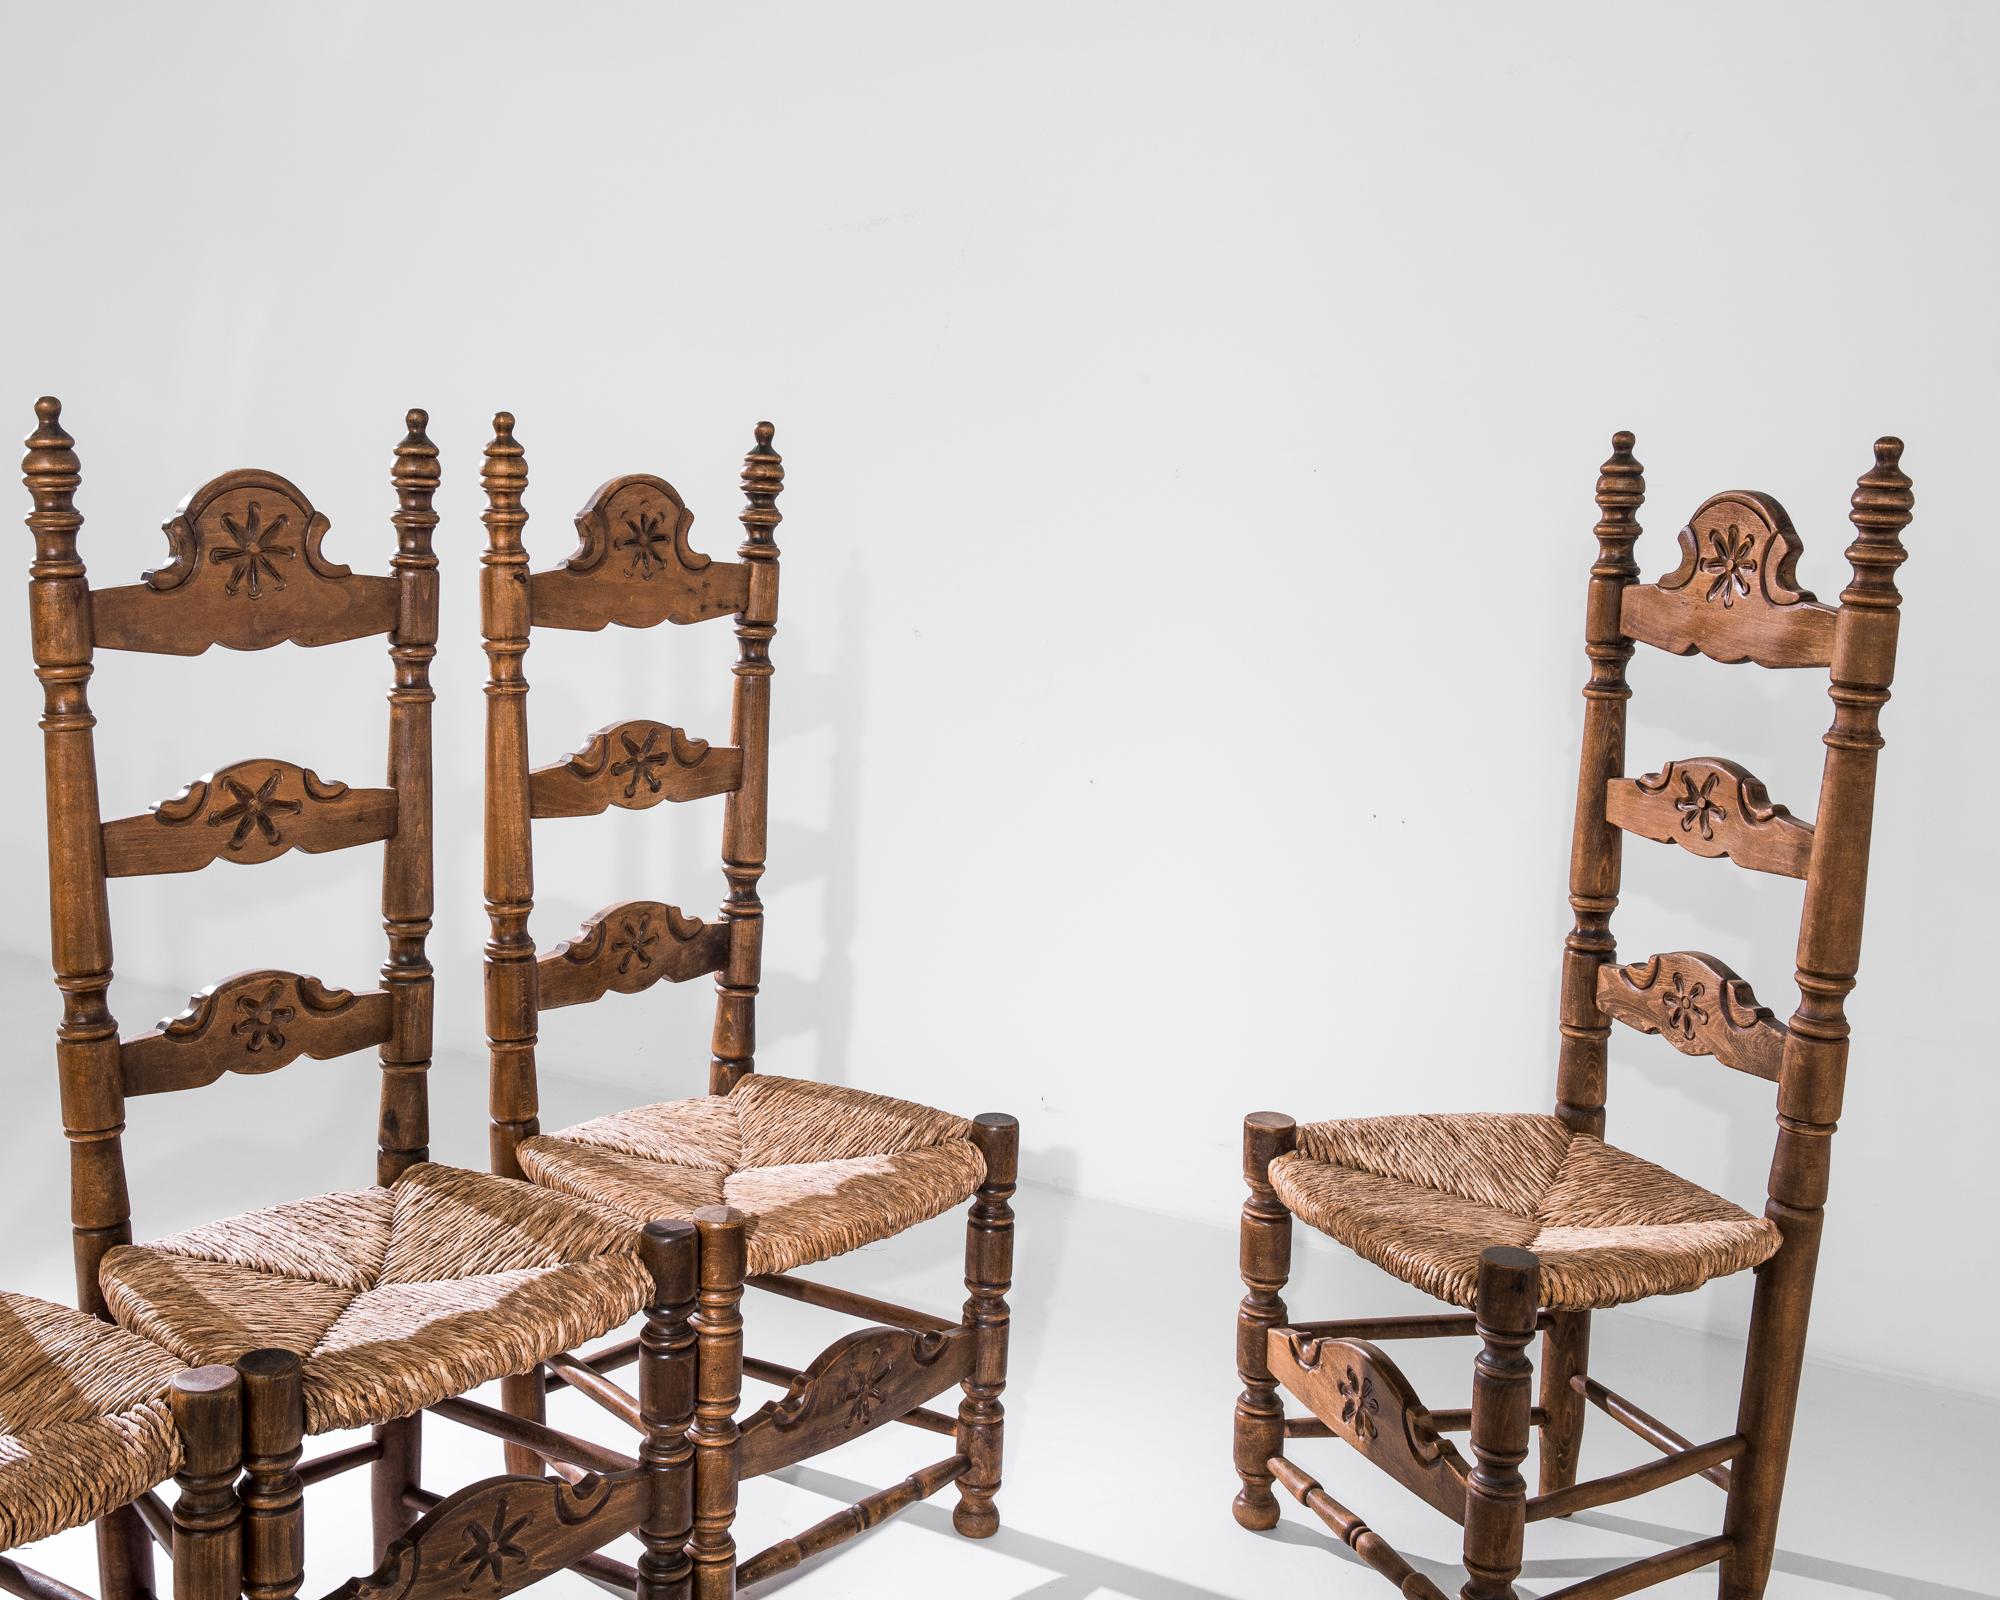 Dieses um 1960 in Belgien gefertigte Set aus Holzstühlen vermittelt einen Hauch von königlicher Würde. Die Stühle verfügen über hohe Rückenlehnen mit Endstücken, helle Geflechtsitze und kunstvoll geschnitzte Balusterbeine. Das bezaubernde